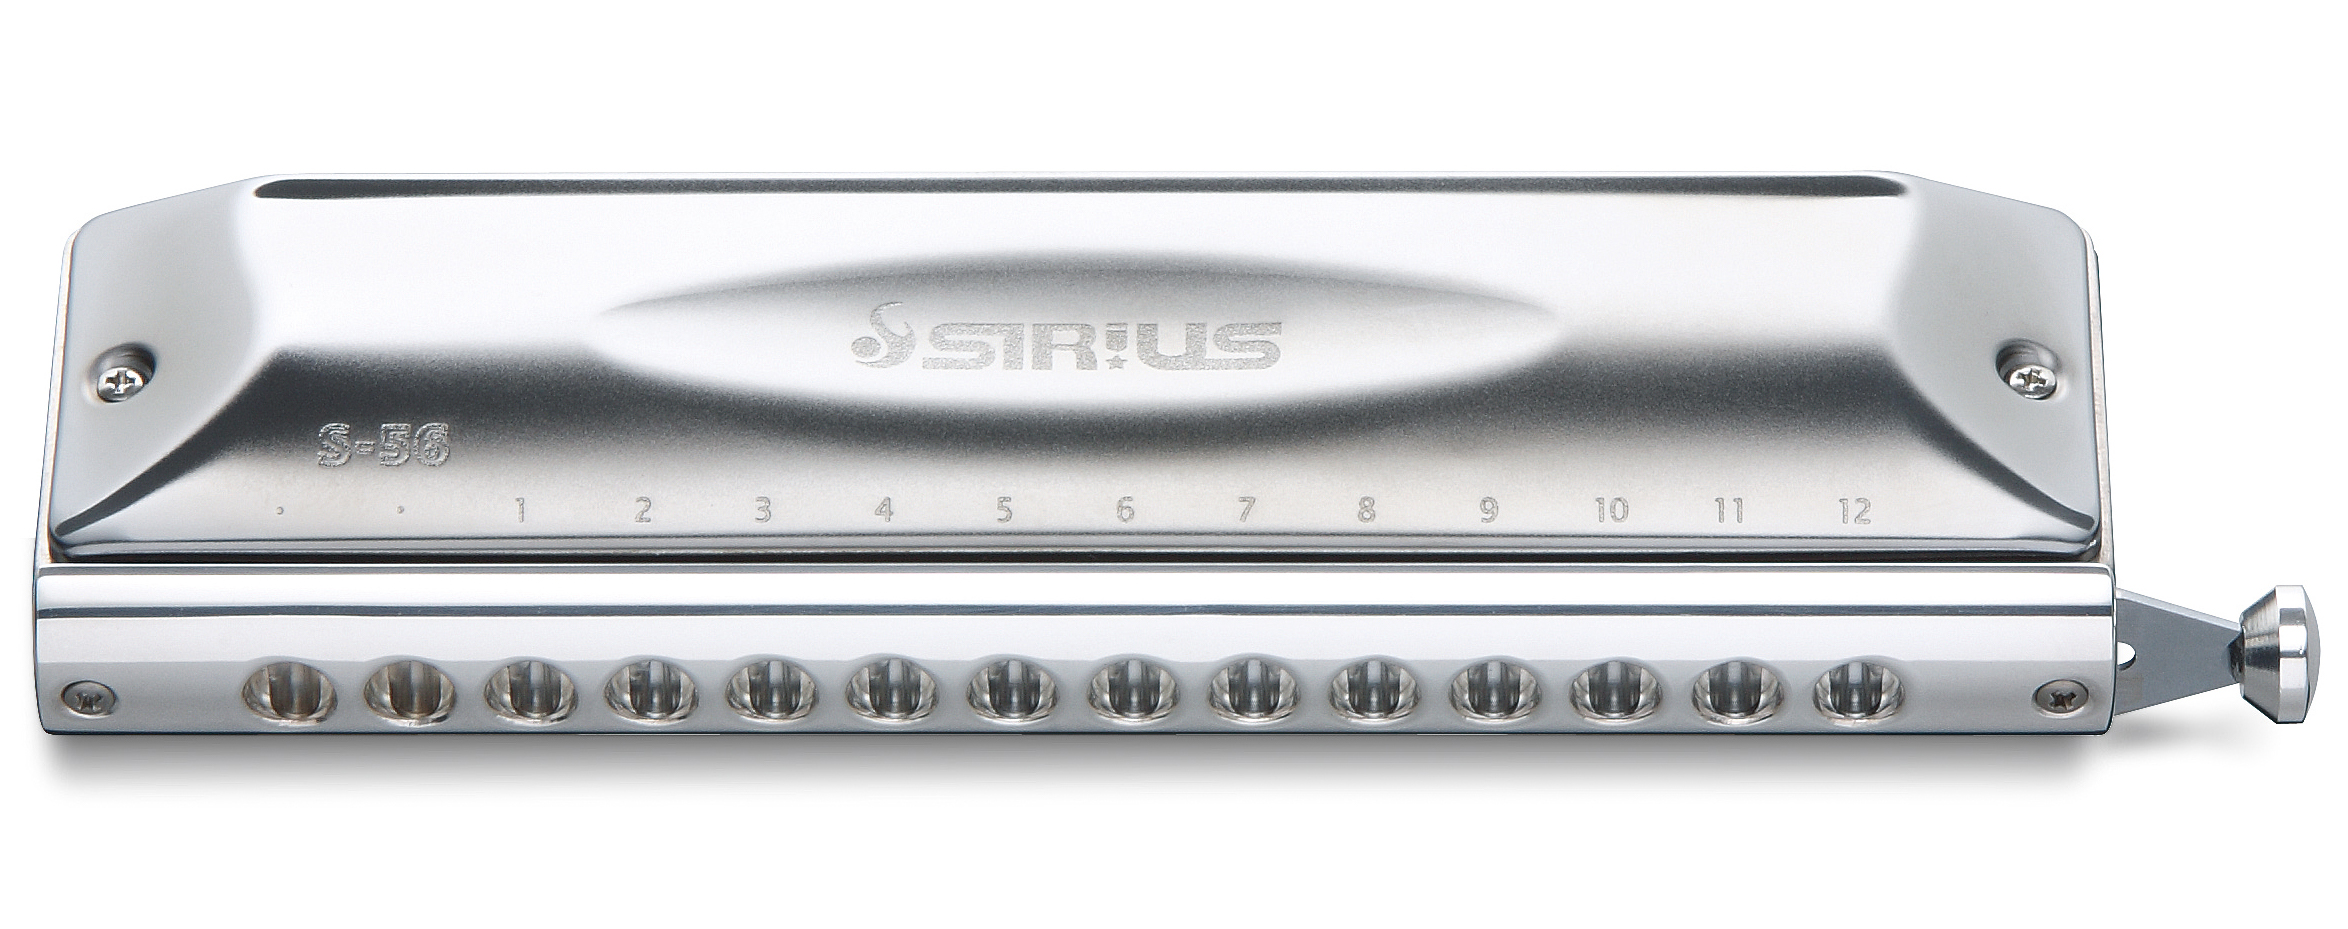 Harmonika chromatická Suzuki  S-56C Sirius Chromatic